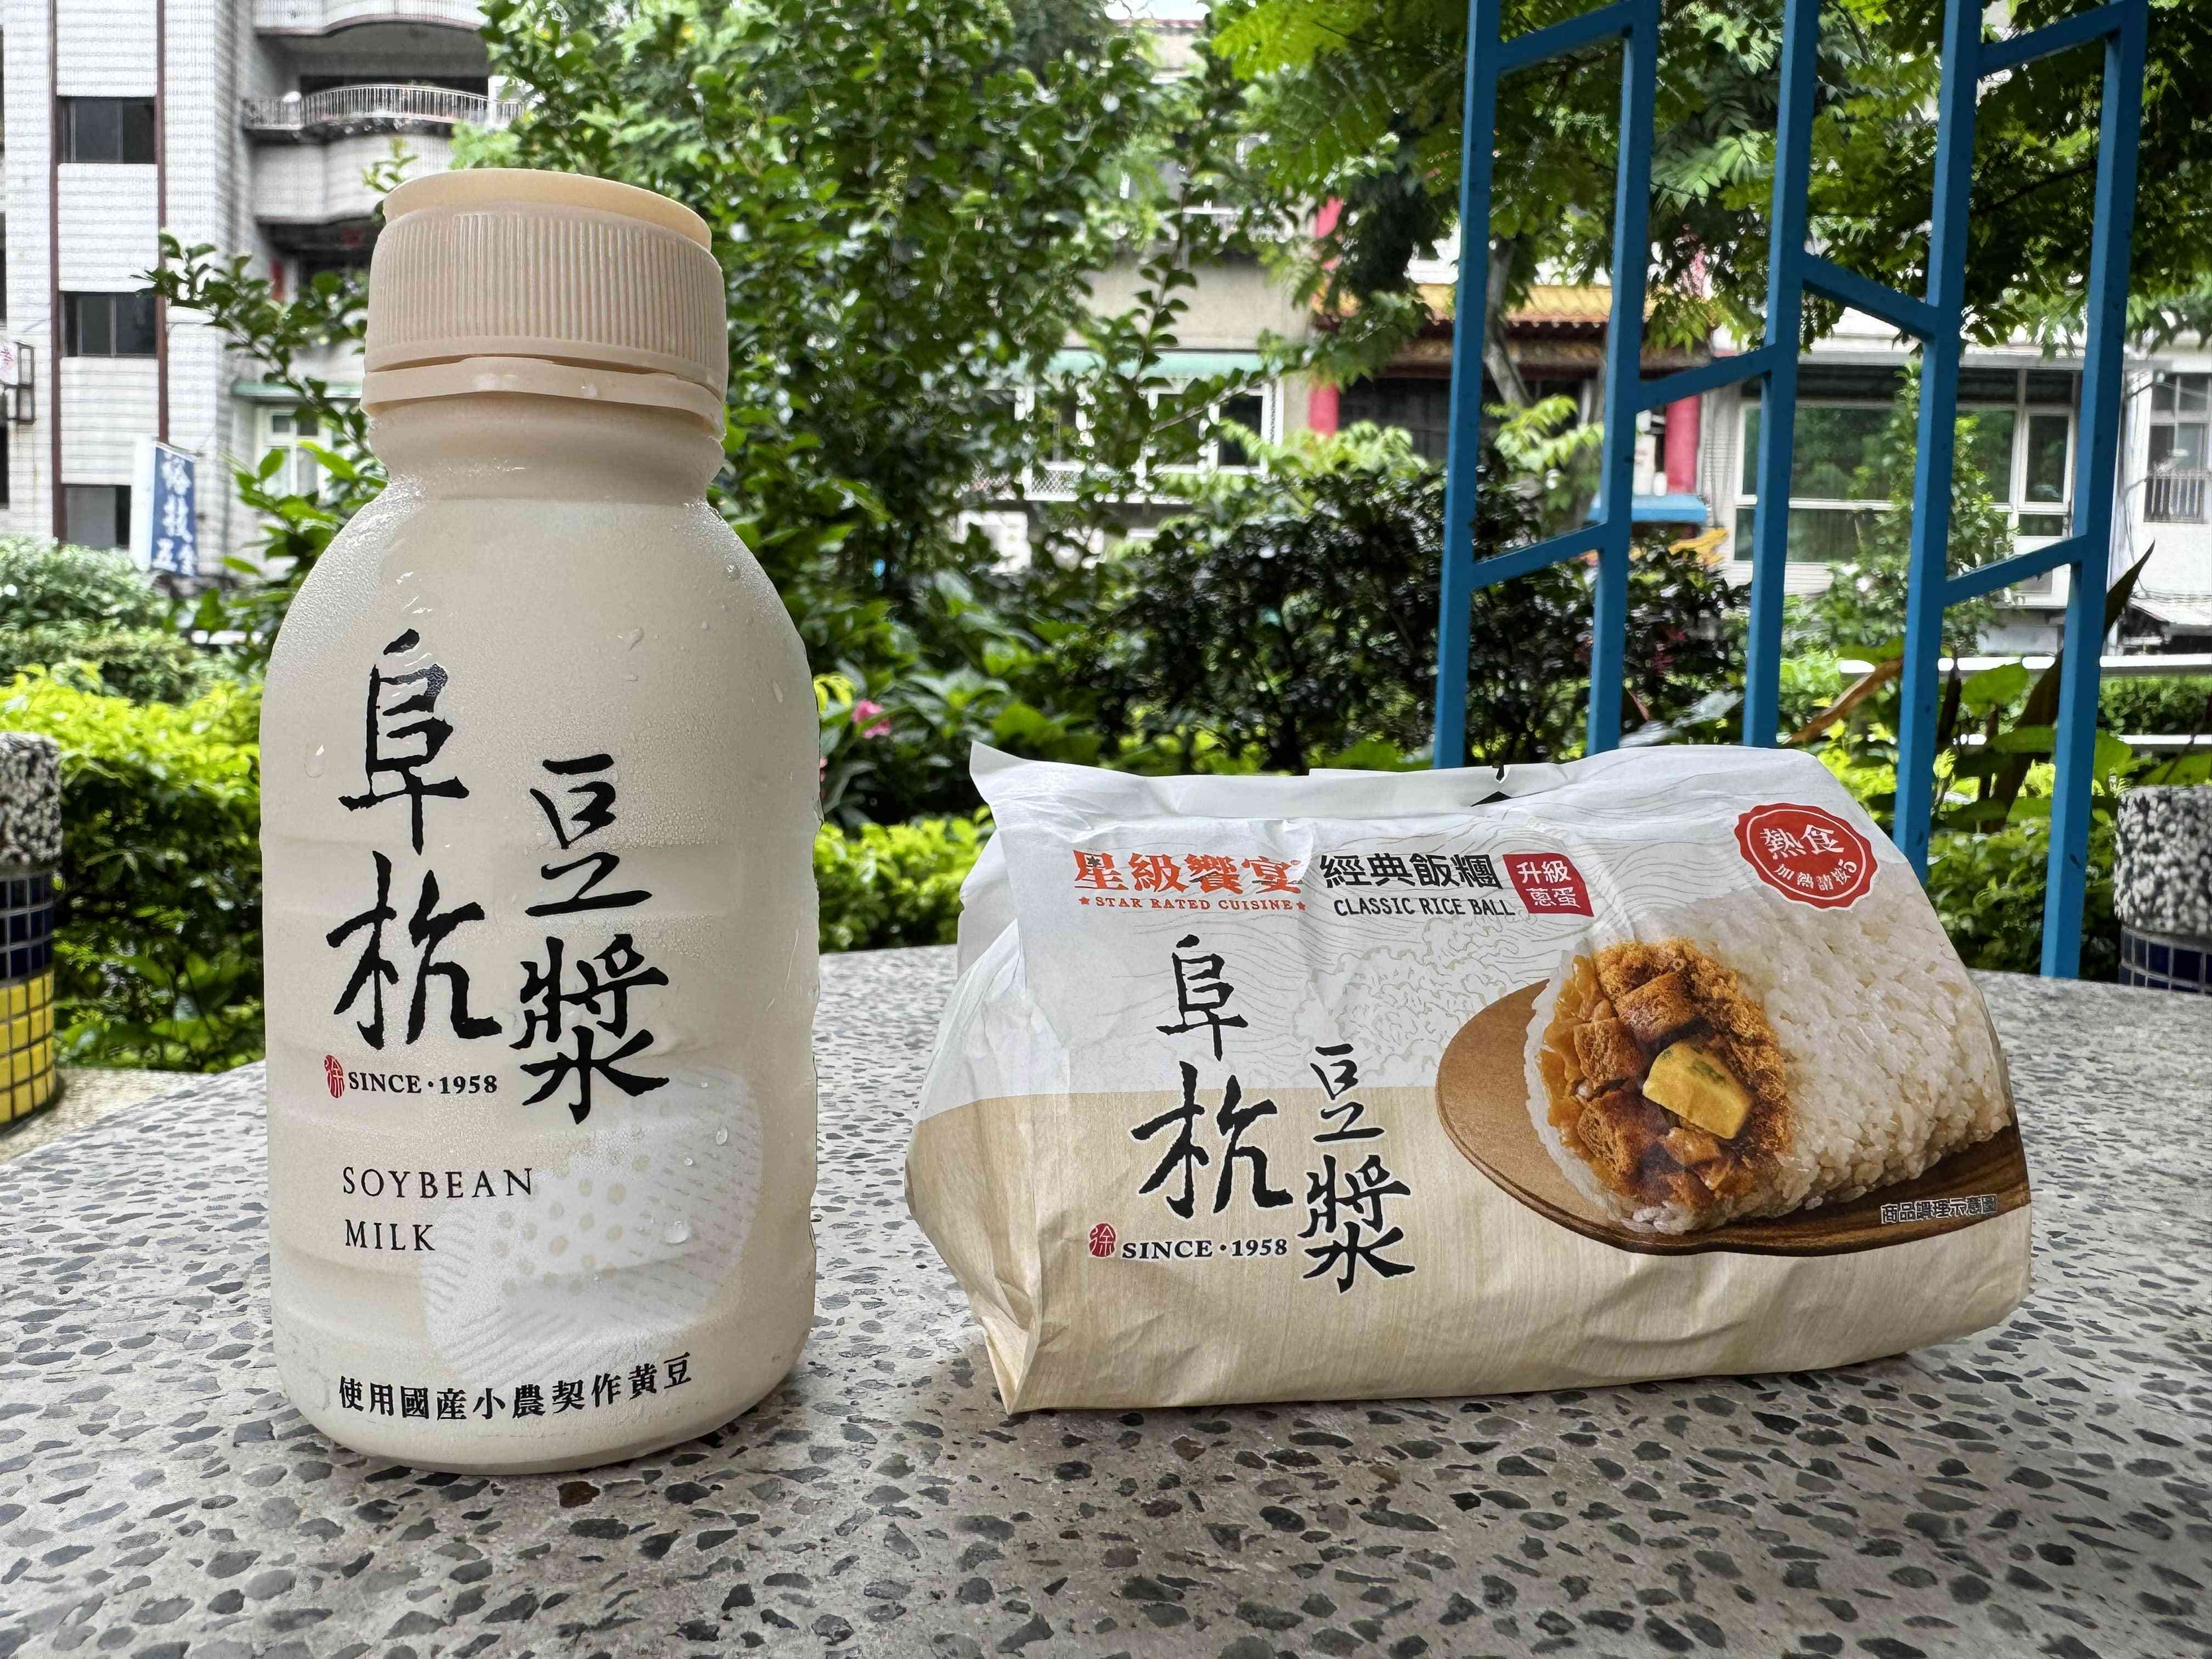 セブン―イレブンと台湾で有名な朝ごはん店「阜杭豆漿」がコラボした台湾式おにぎり「飯団（ファントゥァン、45元）」と豆乳（35元）。台湾式の朝ごはんを体験するのに良い選択だと思います！＝６月５日（ＮＮＡ撮影）